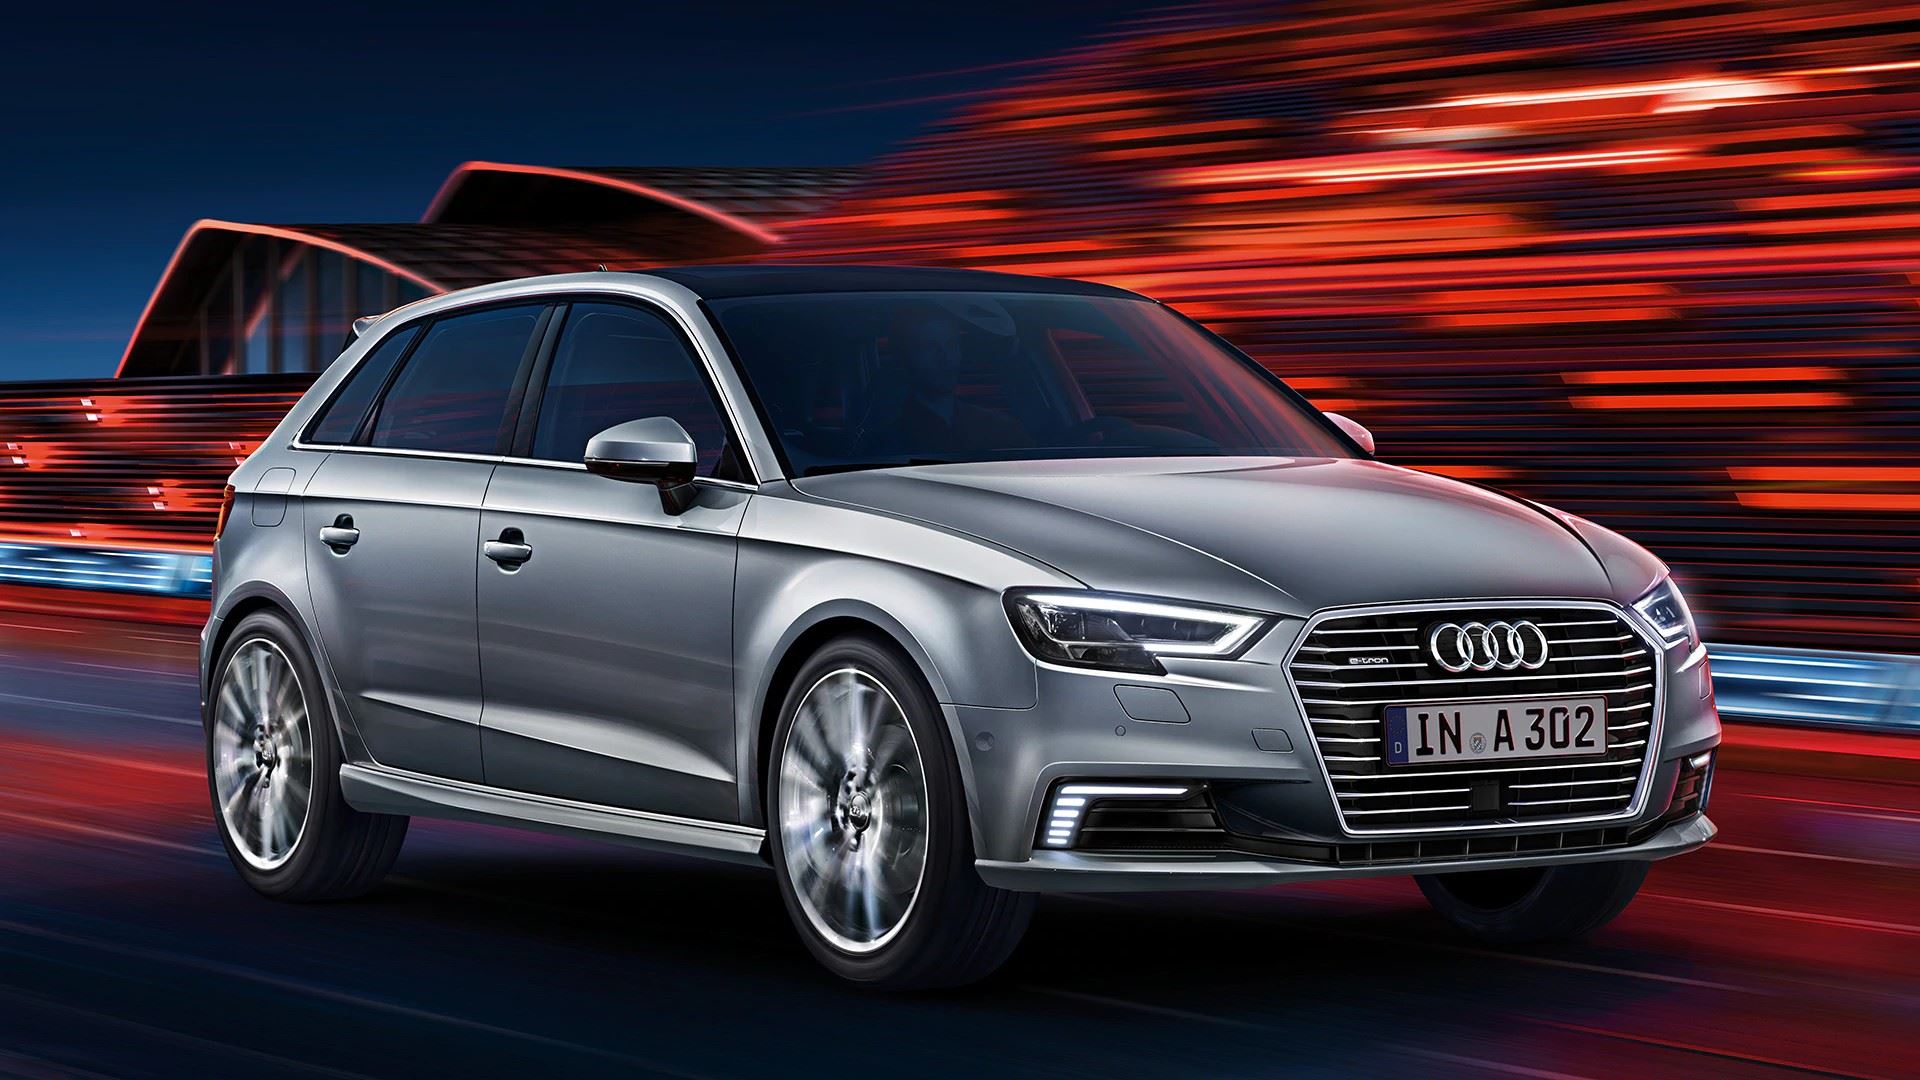 tweedehands daar ben ik het mee eens kin Audi stekkert door: A3 Sportback plug-in hybrid nu leverbaar | Ames